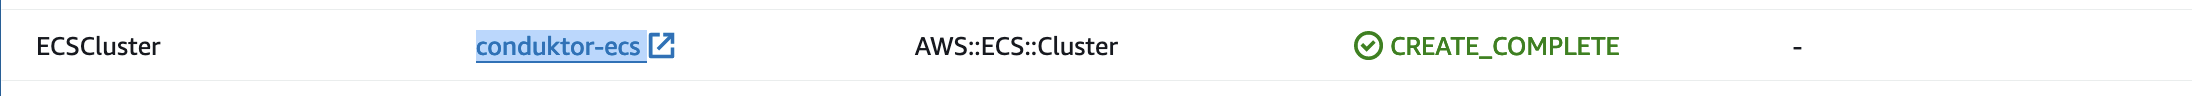 Alt Cluster